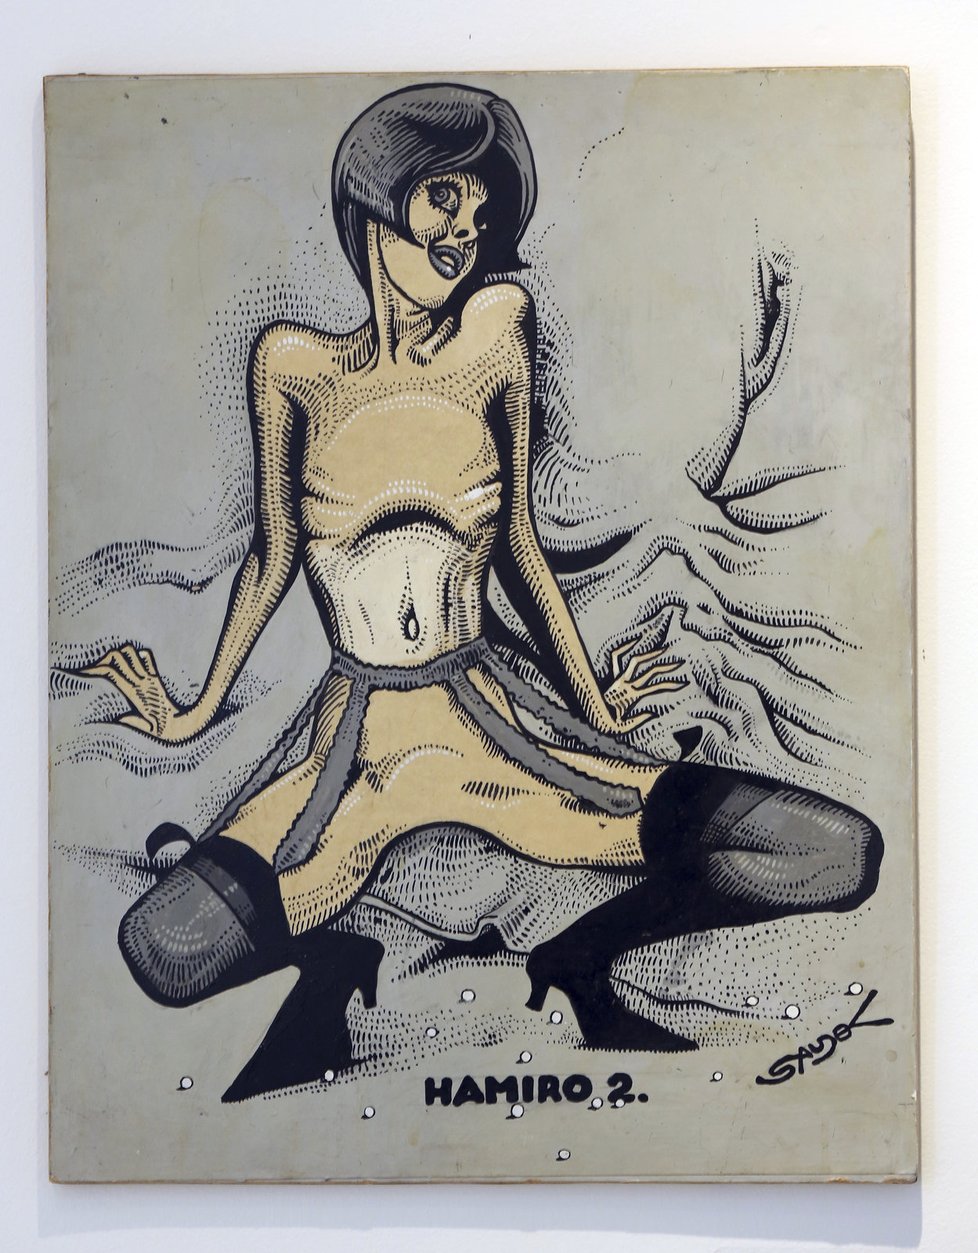 Tuto kresbu pojmenoval Saudek Hamiro. To je přitom označení pro kvalitní české panenky